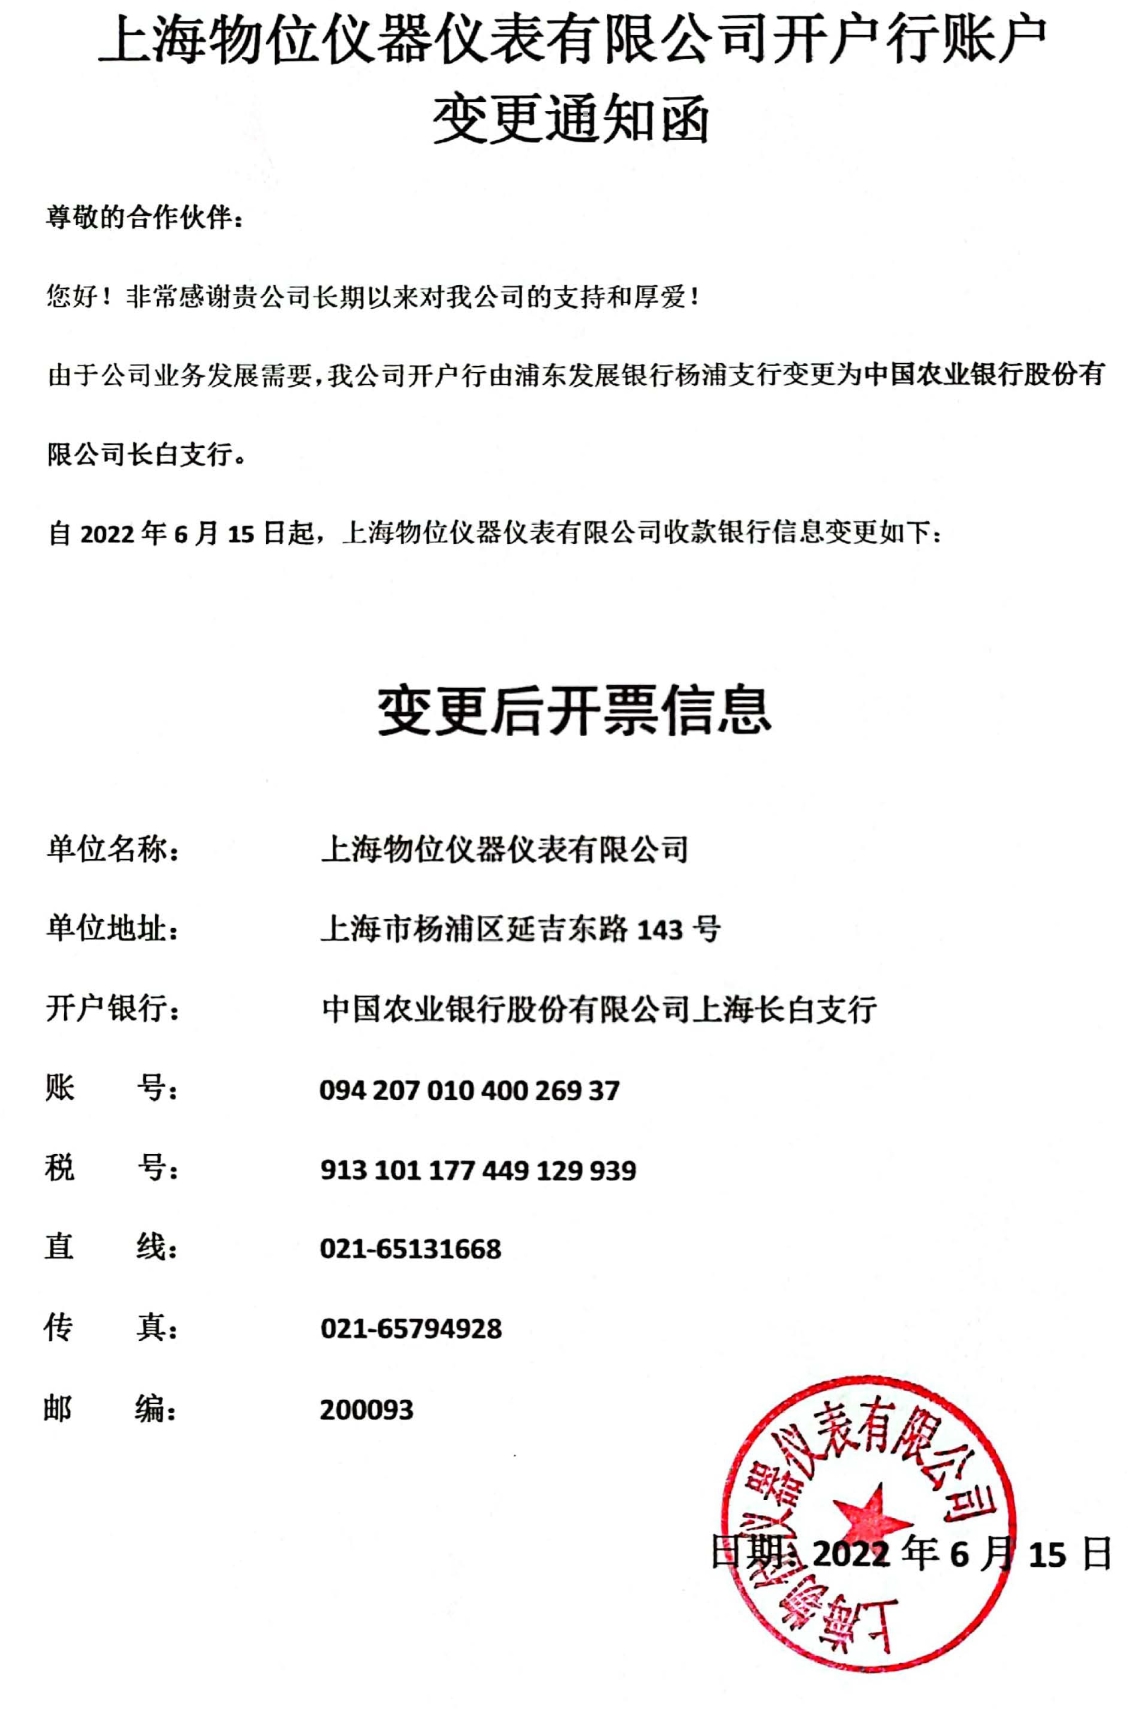 上海物位仪器仪表有限公司开户行账户变更通知